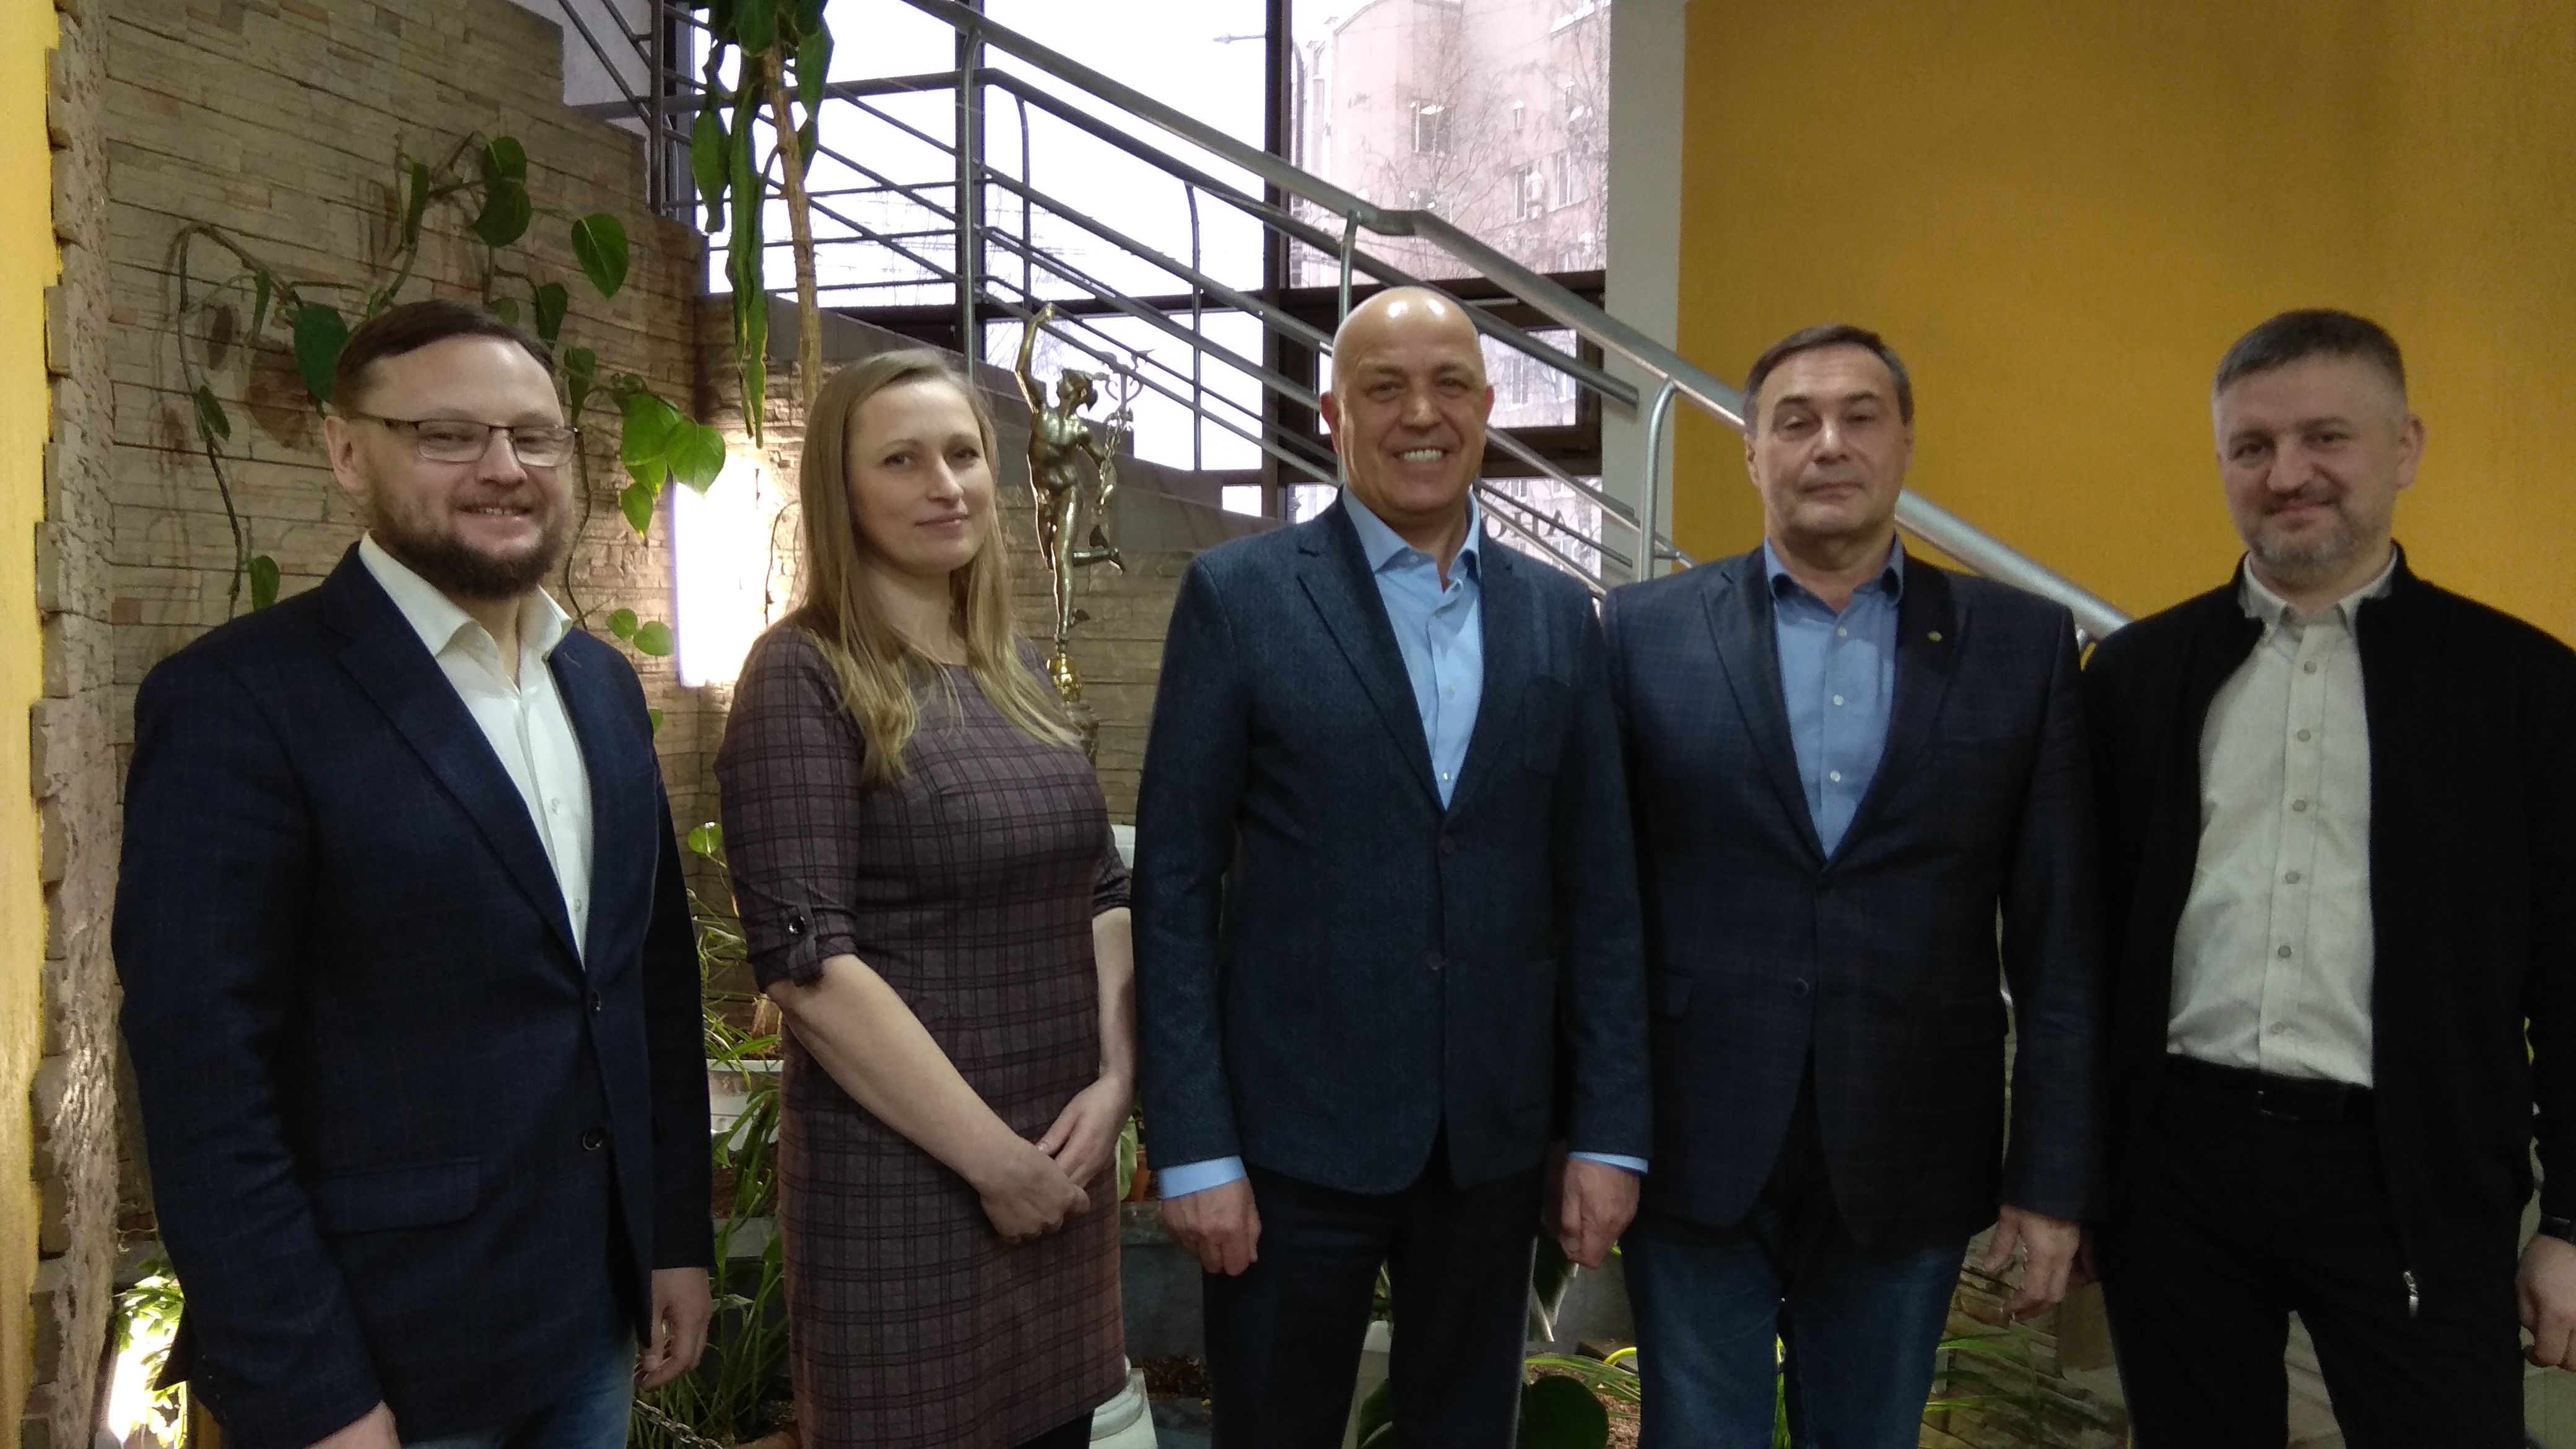 Представители Вятской ТПП встретились в Сыктывкаре с коллегами из ТПП Коми 